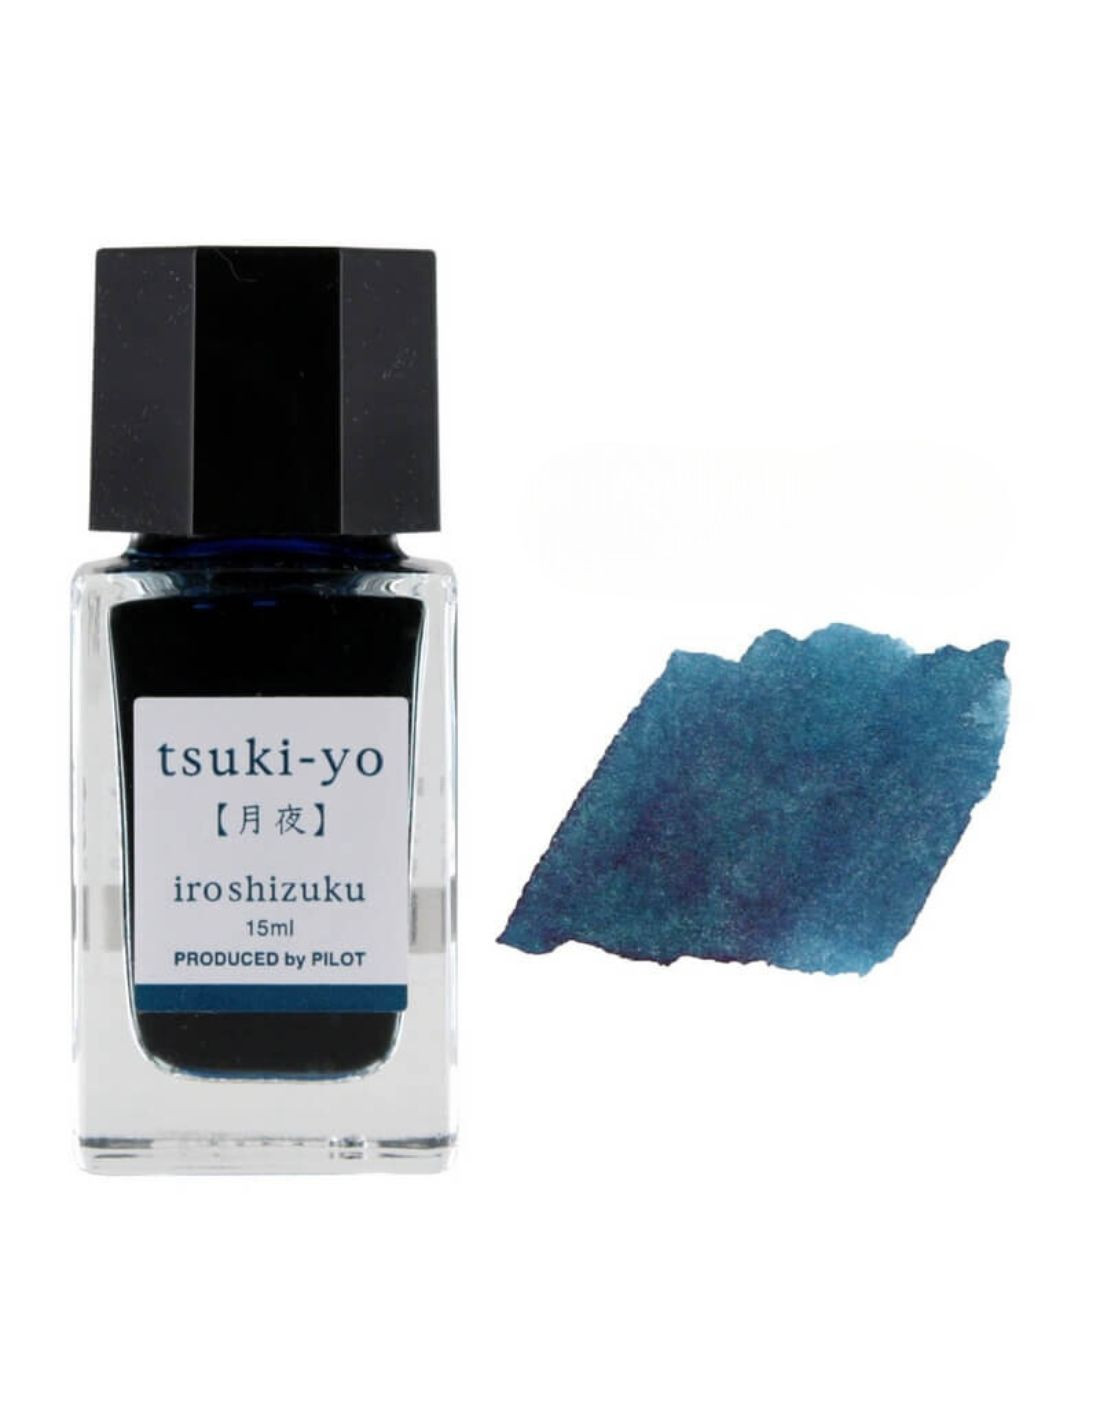 Iroshizuku Ink - Bottle 15ml - Tsuki-yo - Pilot